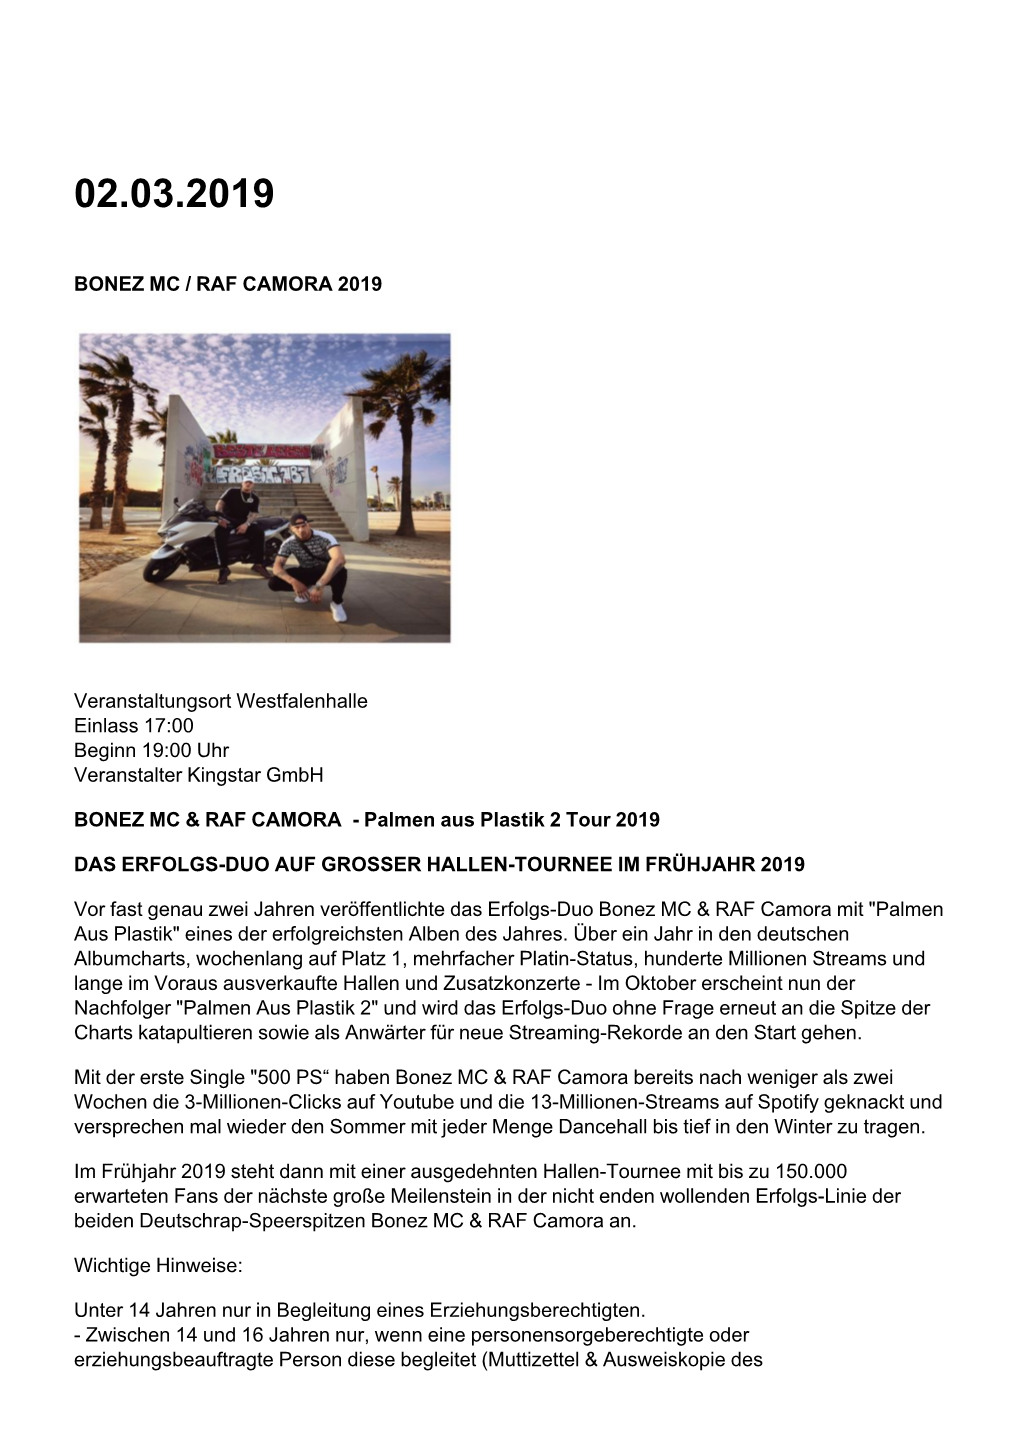 BONEZ MC / RAF CAMORA 2019 Veranstaltungsort Westfalenhalle